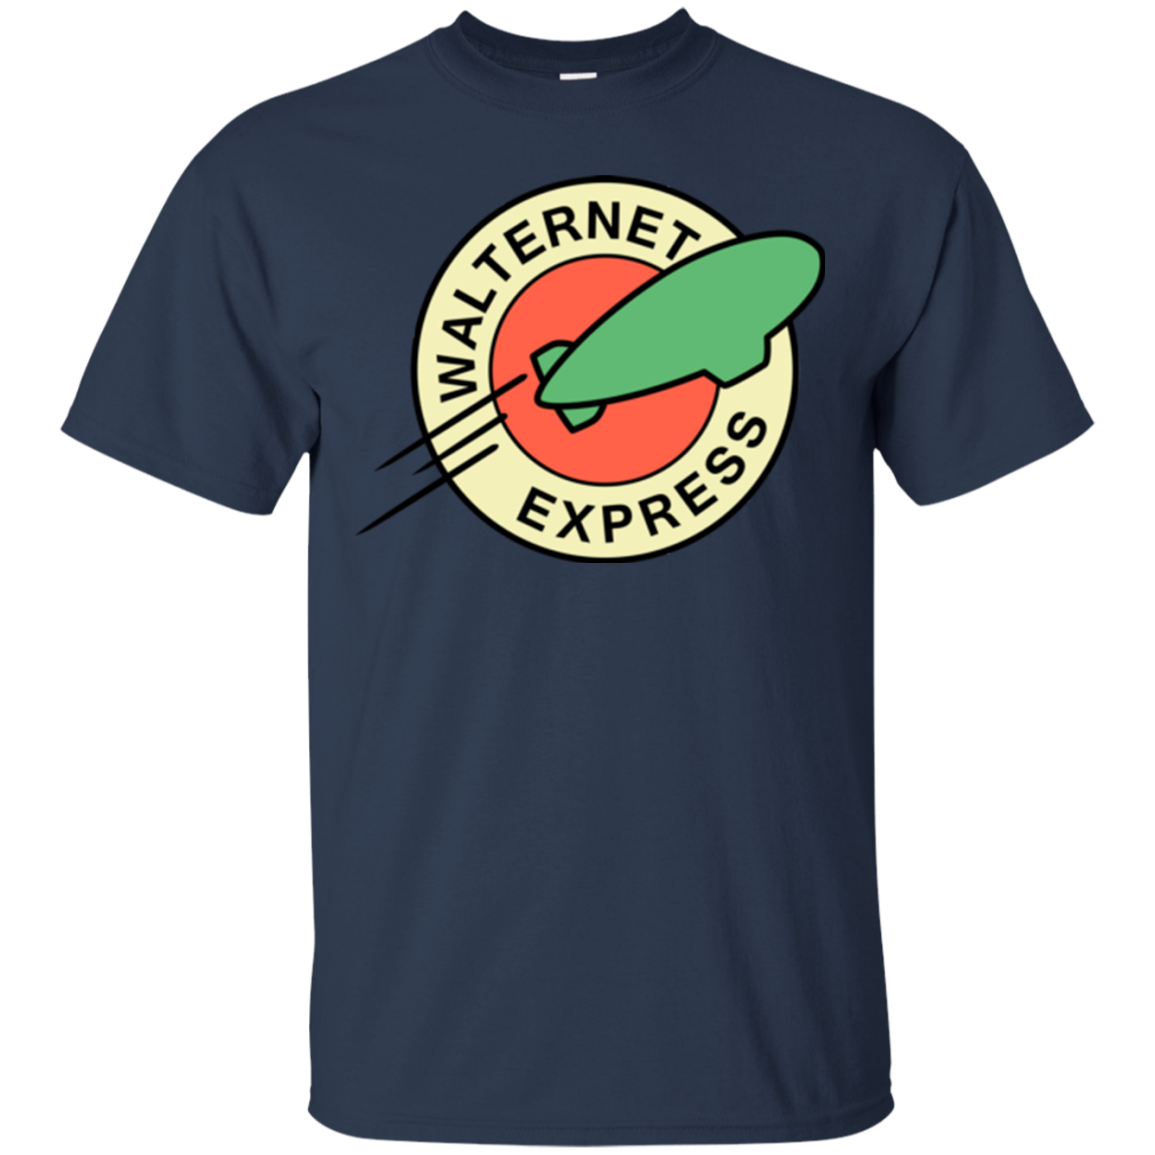 Walternet Express T-Shirt